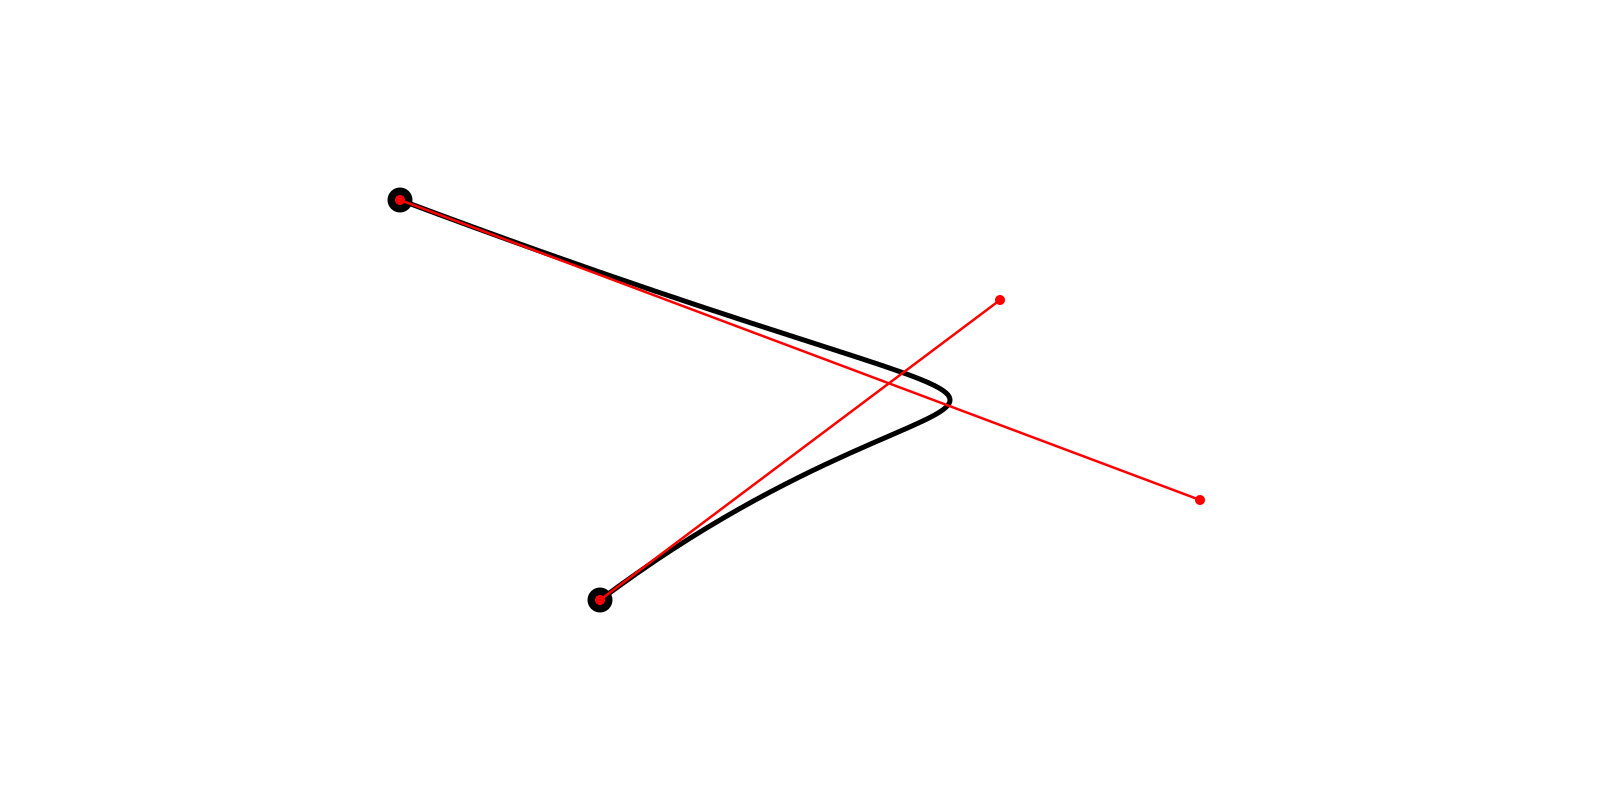 Адаптивное разбиение кривых Безье 2-го и 3-го порядка - 2